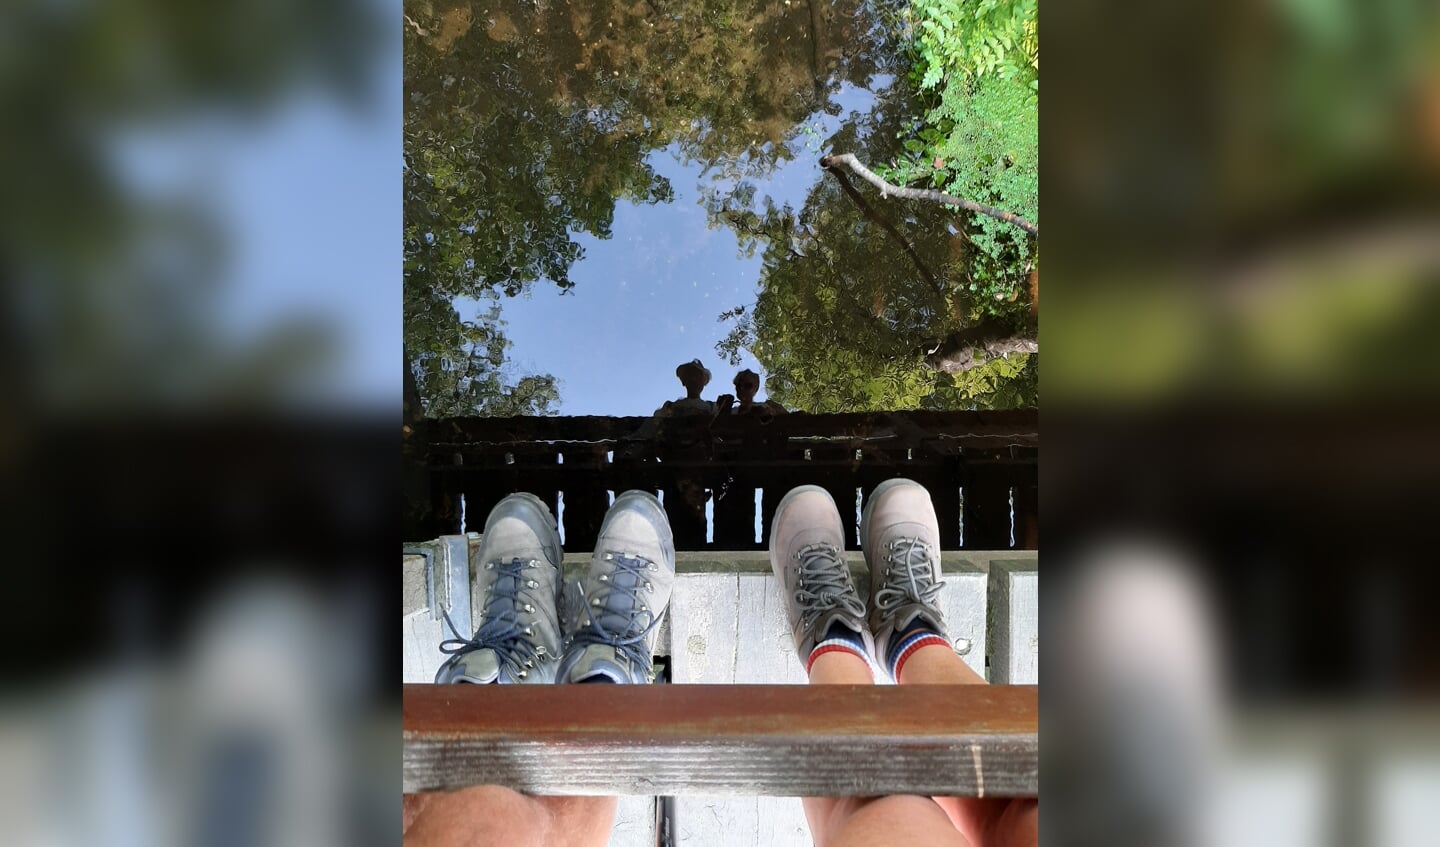 ,,Deze foto is gemaakt op 11 augustus jl. in de buurt van Landgoed Staverden. 
Wij stonden tijdens onze wandeling op een bruggetje en in de weerspiegeling van het water zijn onze gezichten zichtbaar wat een bijzonder effect geeft.